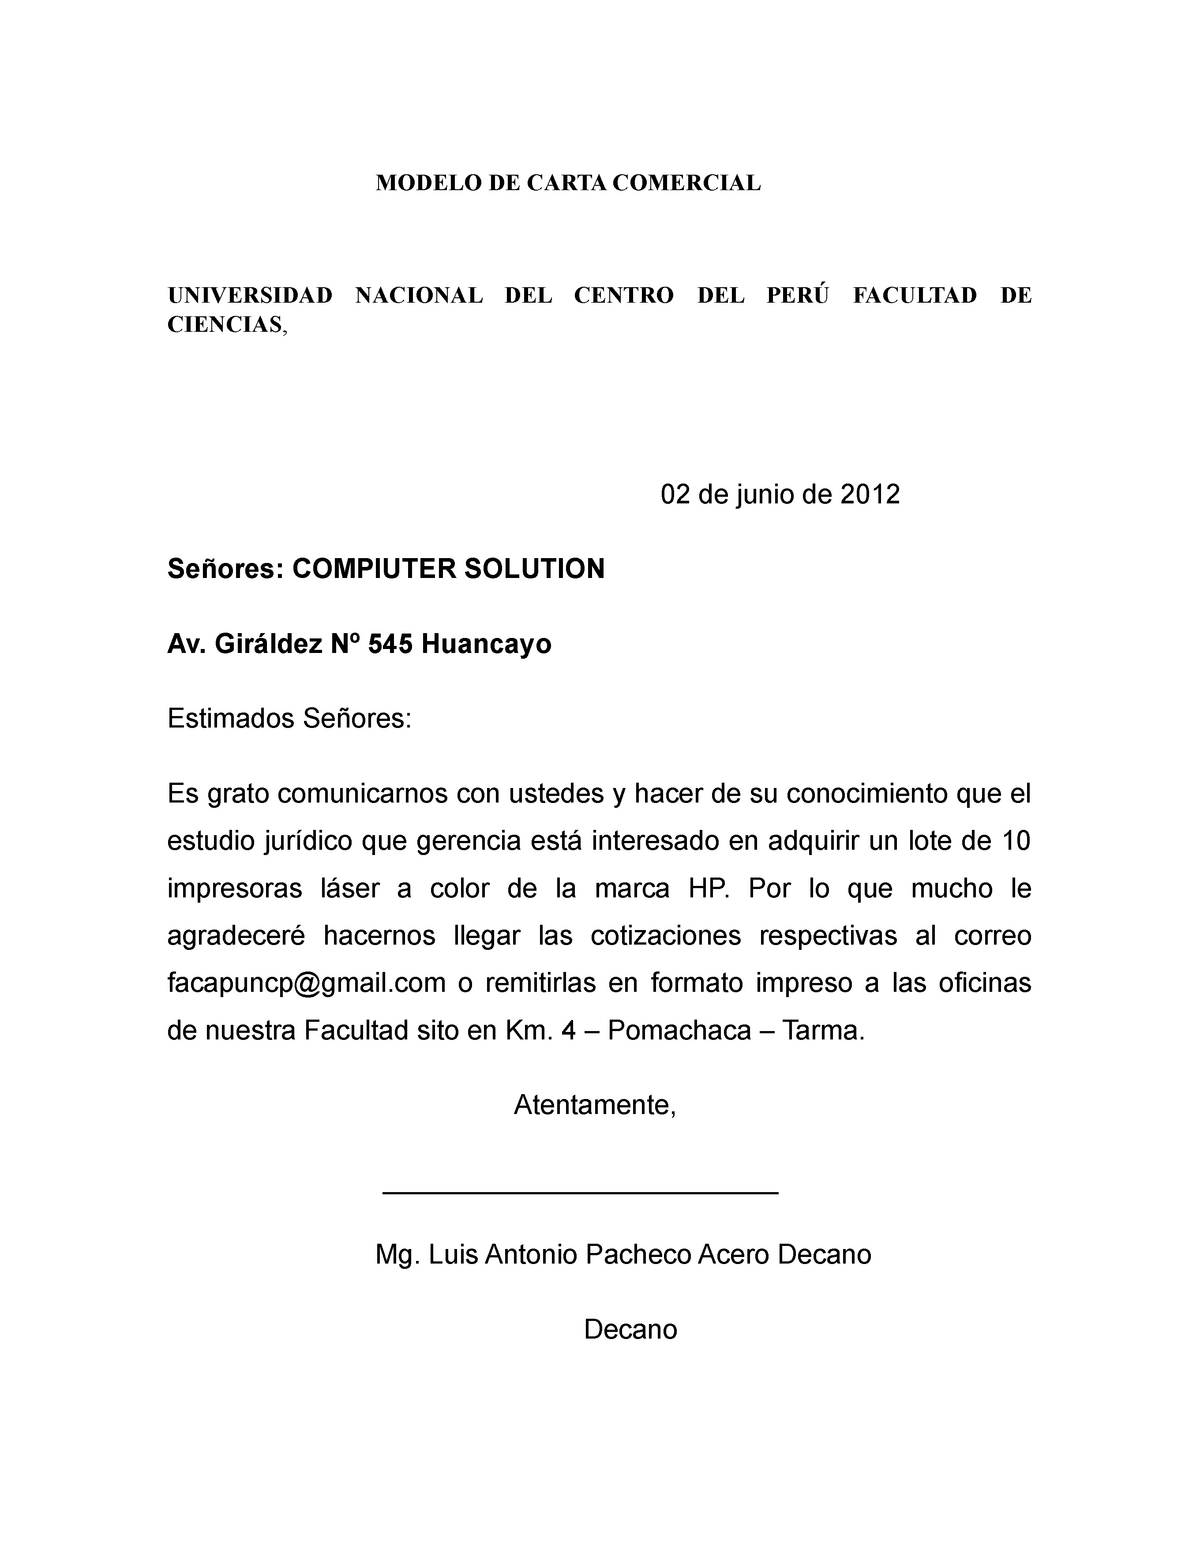 Modelo DE Carta Comercial - MODELO DE CARTA COMERCIAL UNIVERSIDAD NACIONAL  DEL CENTRO DEL FACULTAD - Studocu